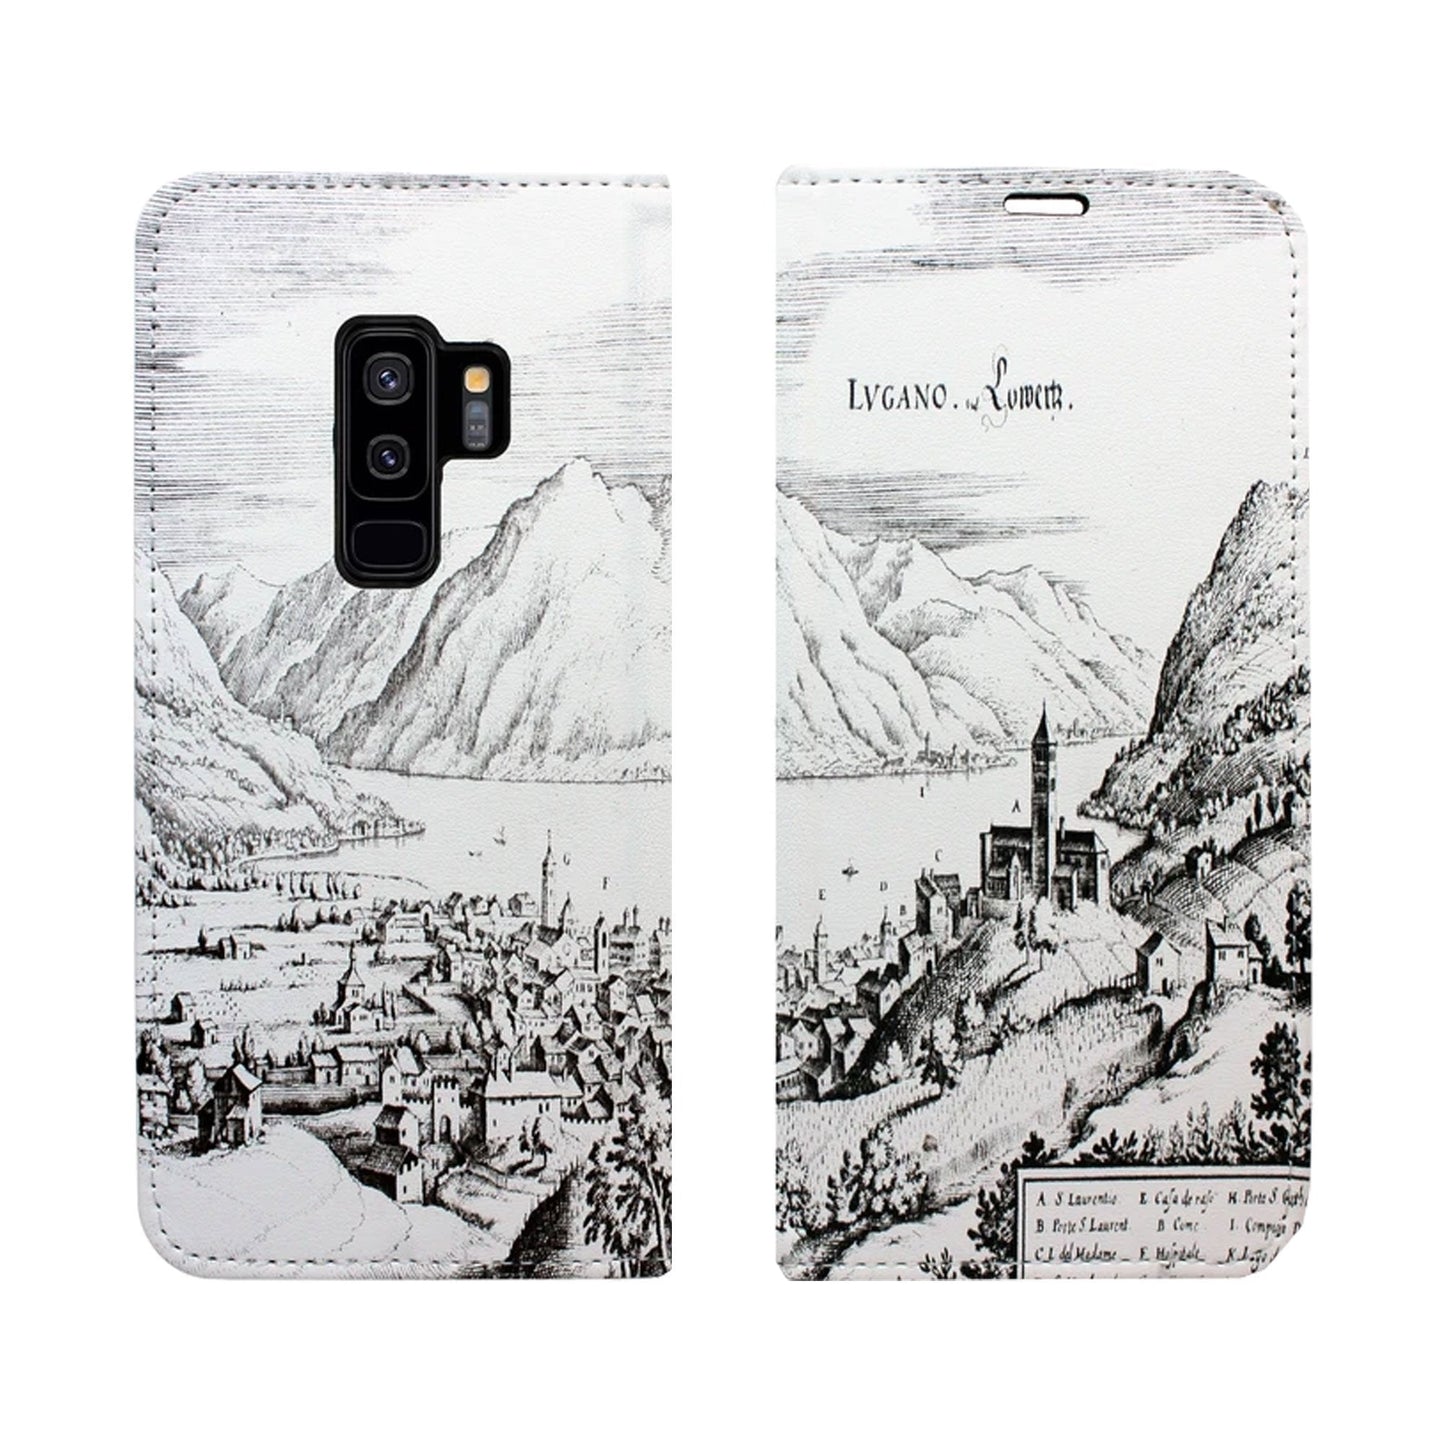 Lugano Merian Panorama Case für iPhone und Samsung